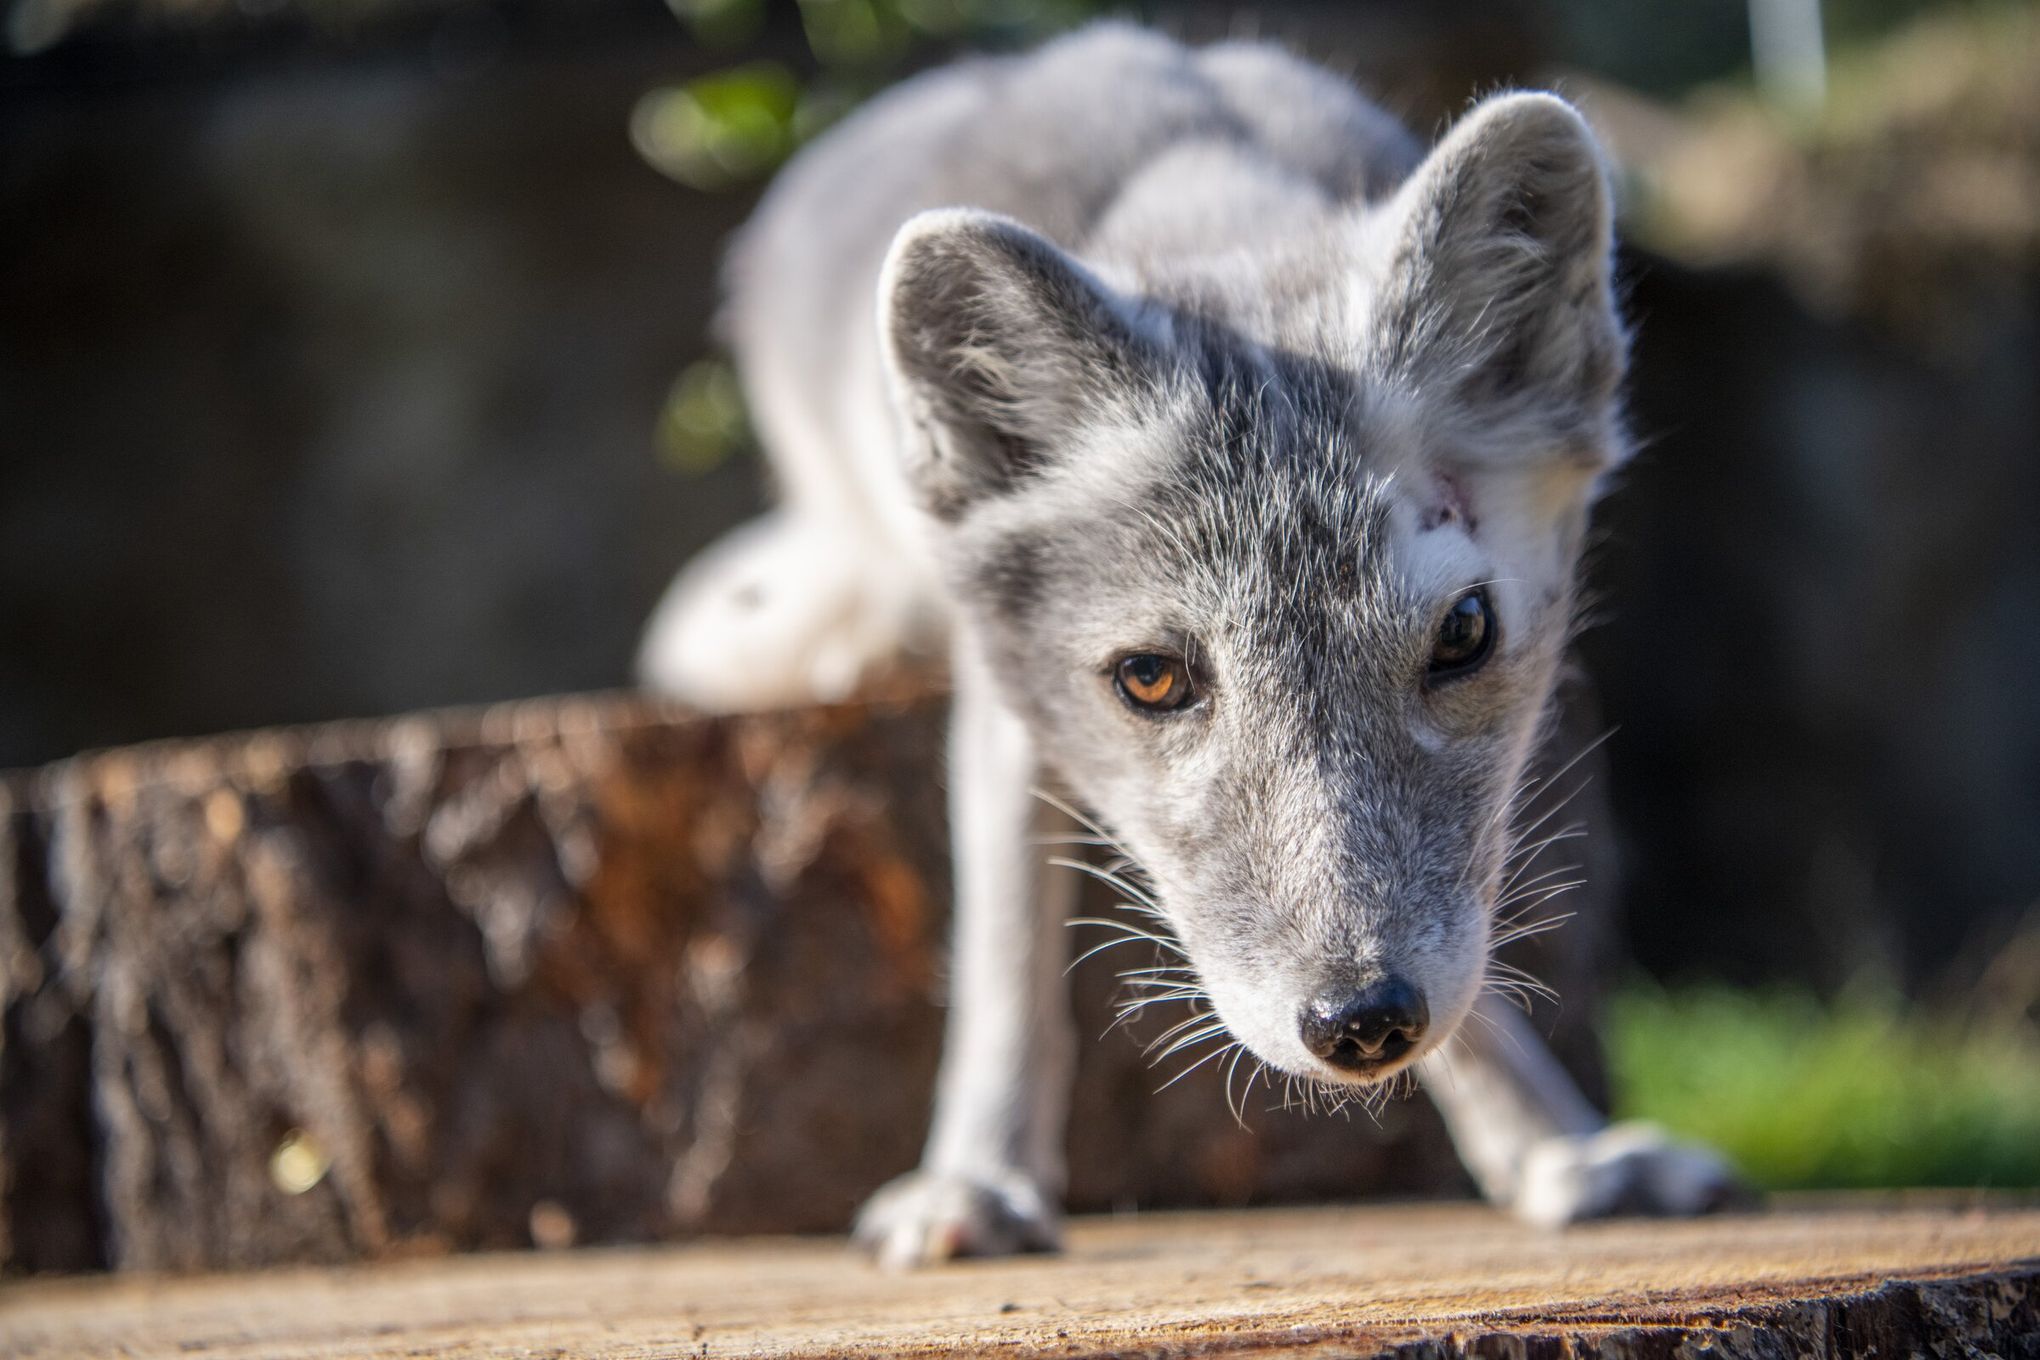 Arctic Fox Pictures - AZ Animals